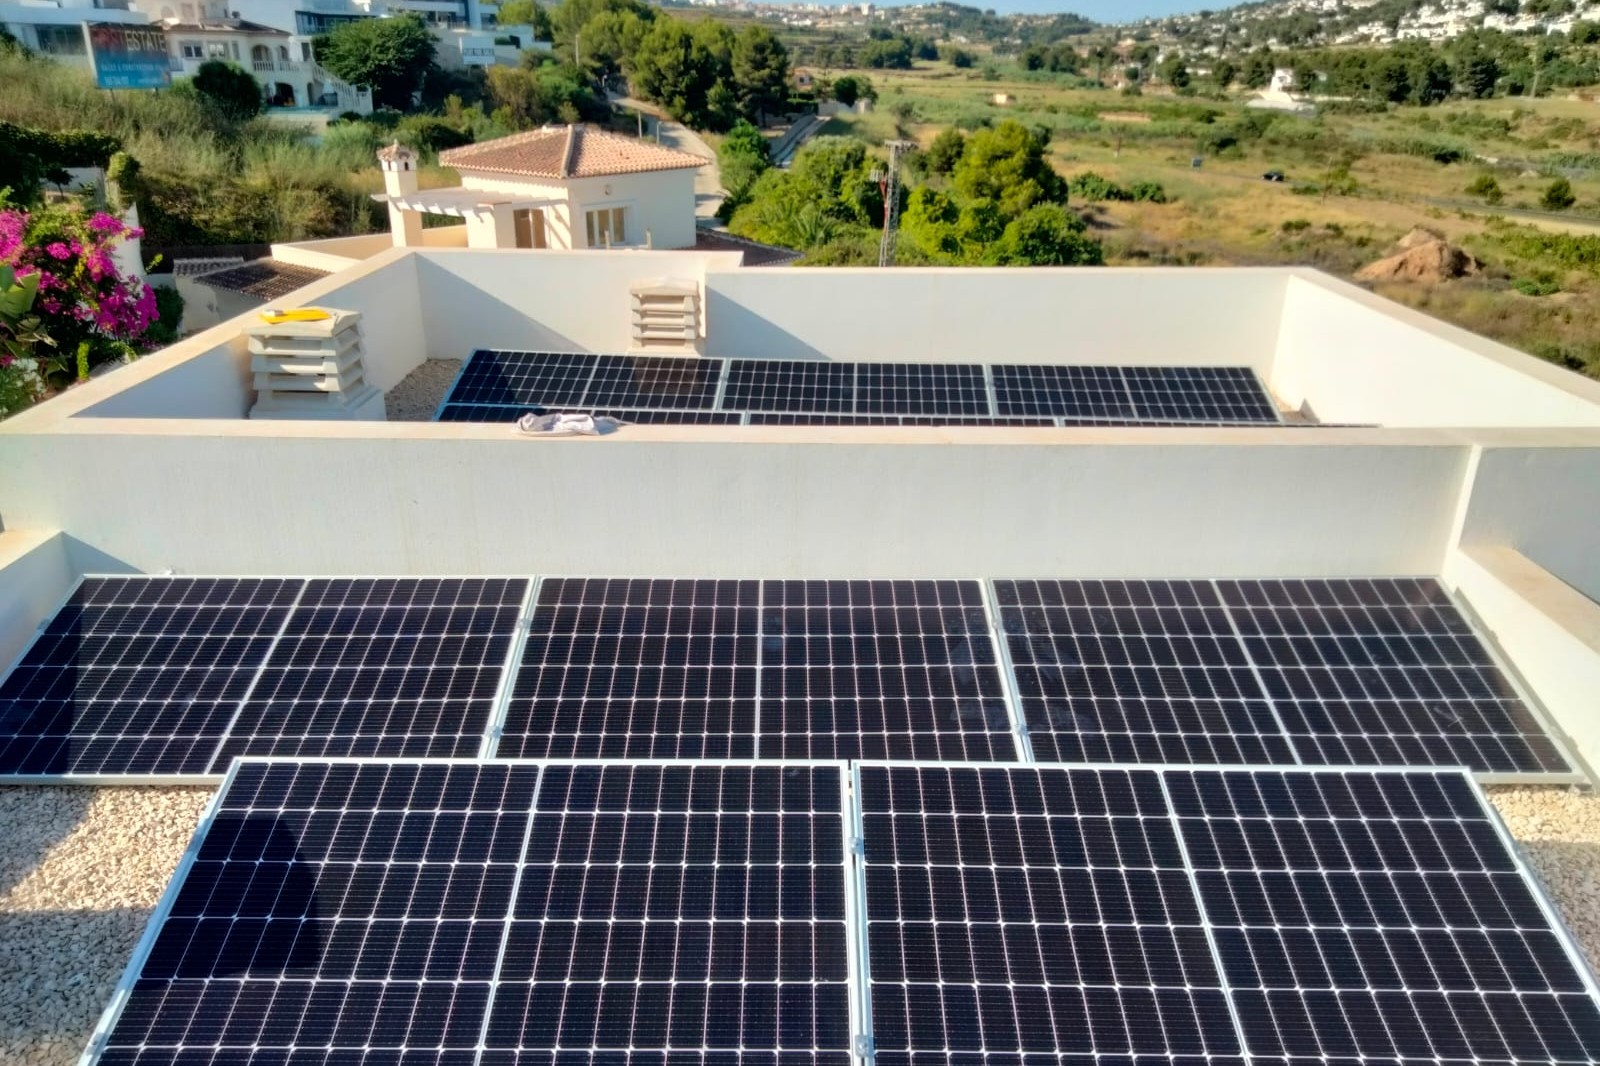 18X 385 wp Paneles Solares, Moraira, Alicante (Sistema híbrido)